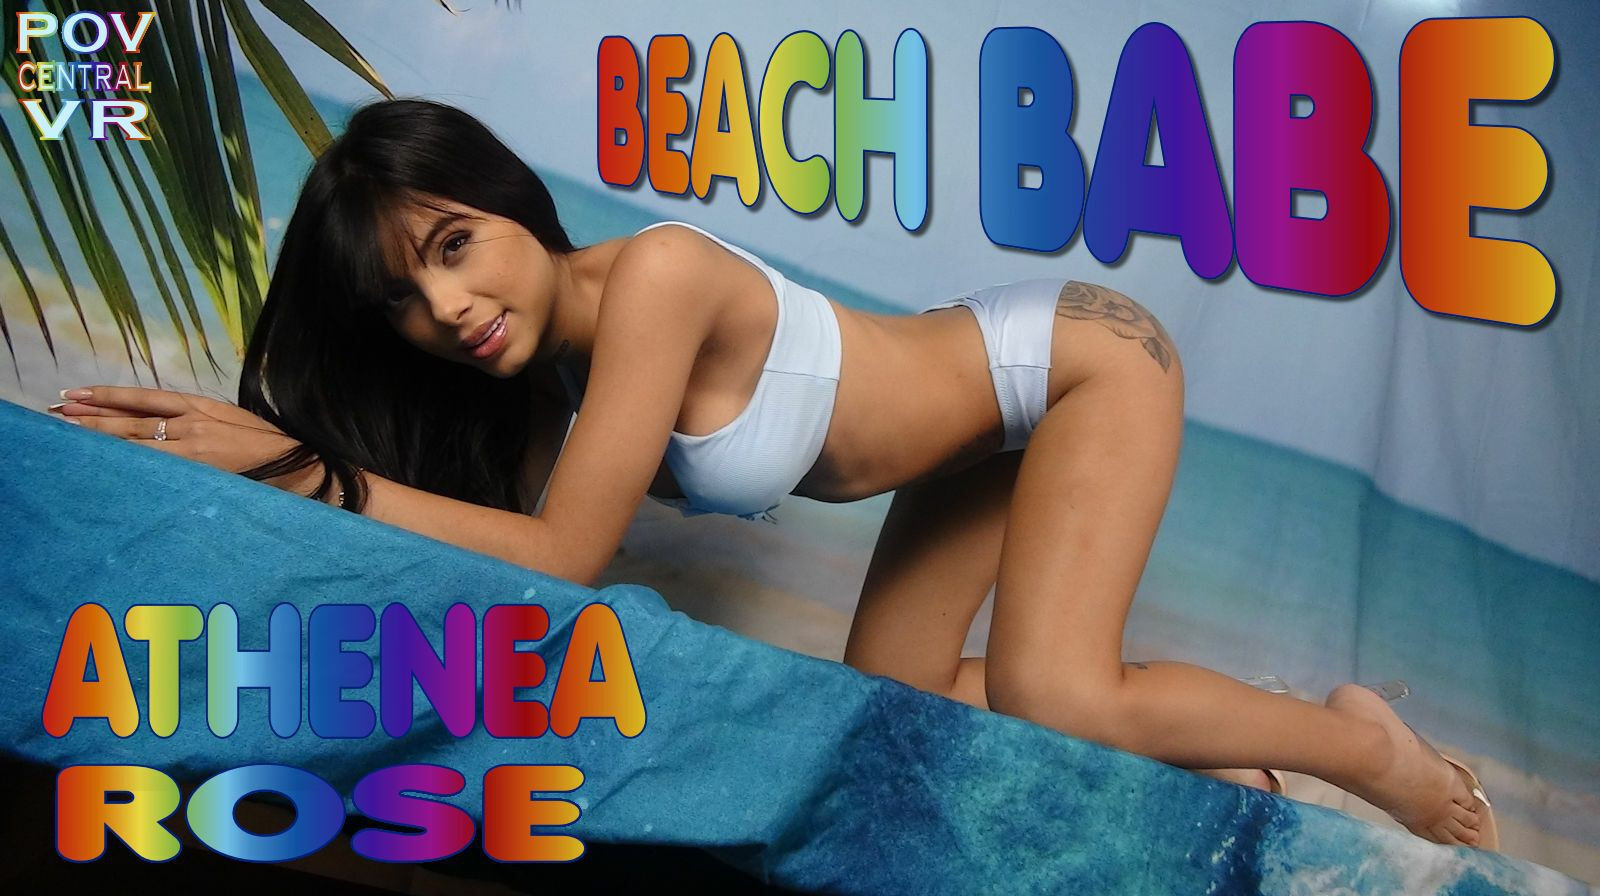 Athenea Rose: Beach Babe: Athenea Rose Slideshow